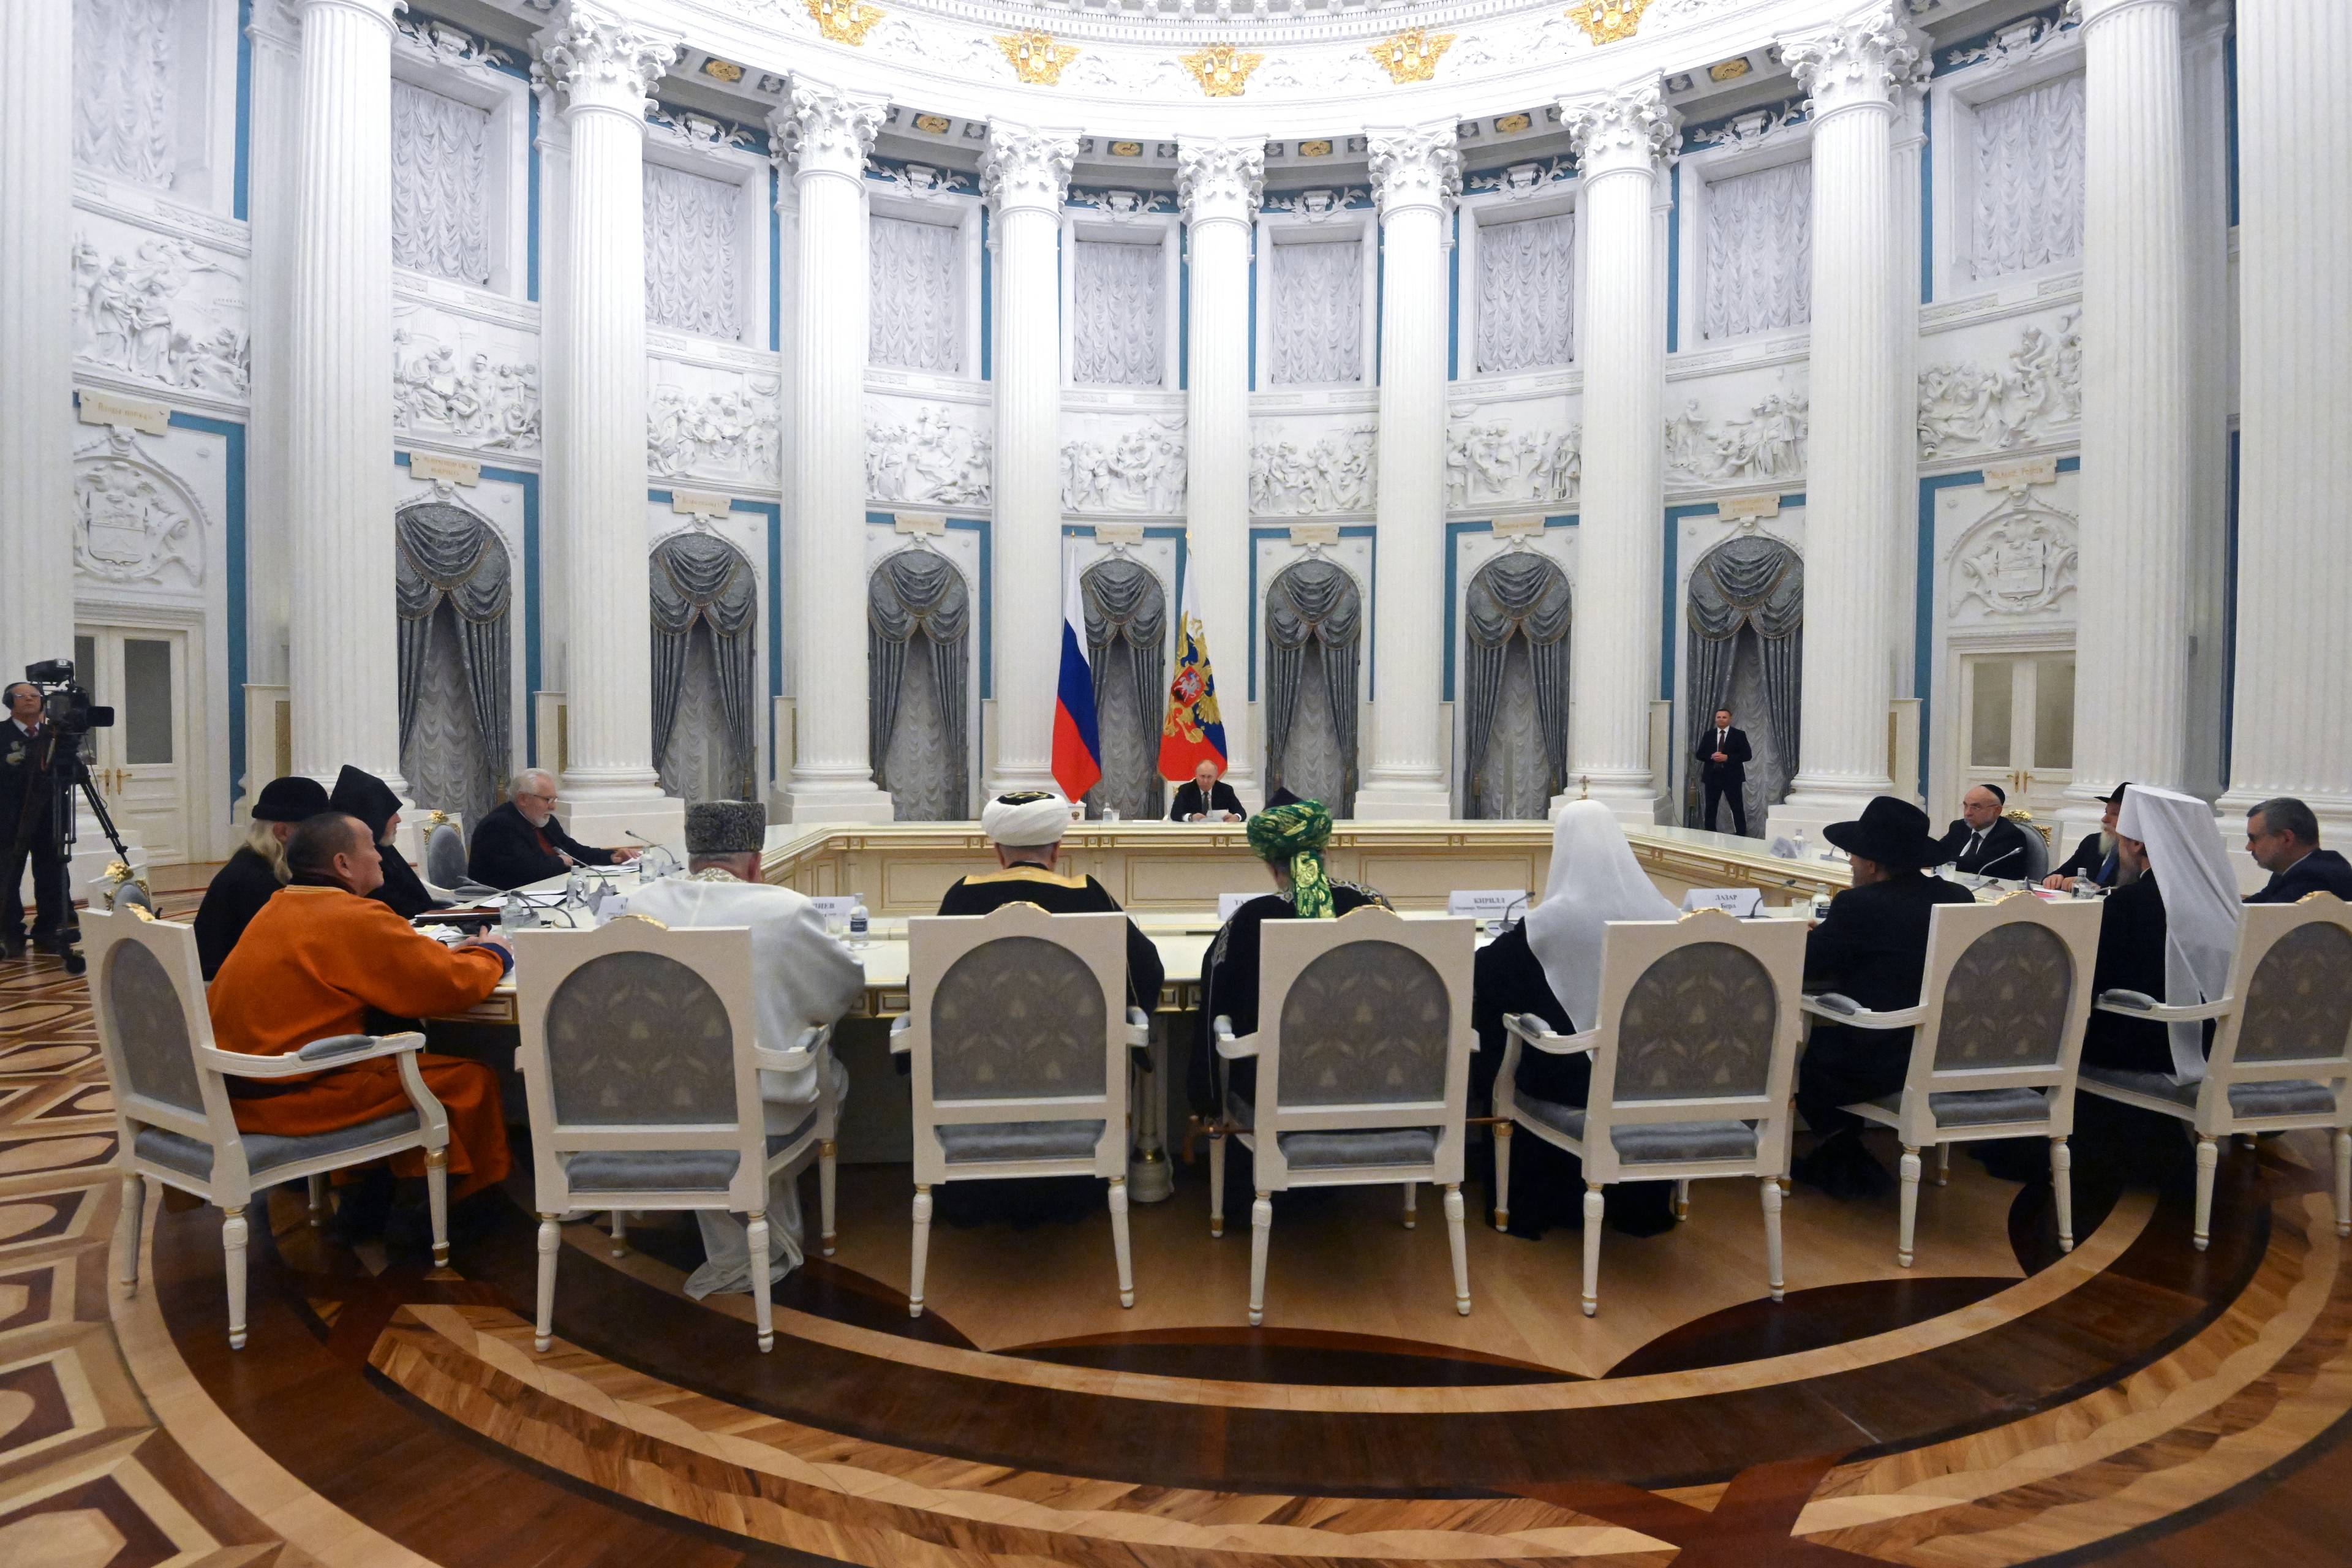 W wielkiej sali z kolumnadą za stołem siedzą dostojnicy religijni a naprzeciwko - Putin